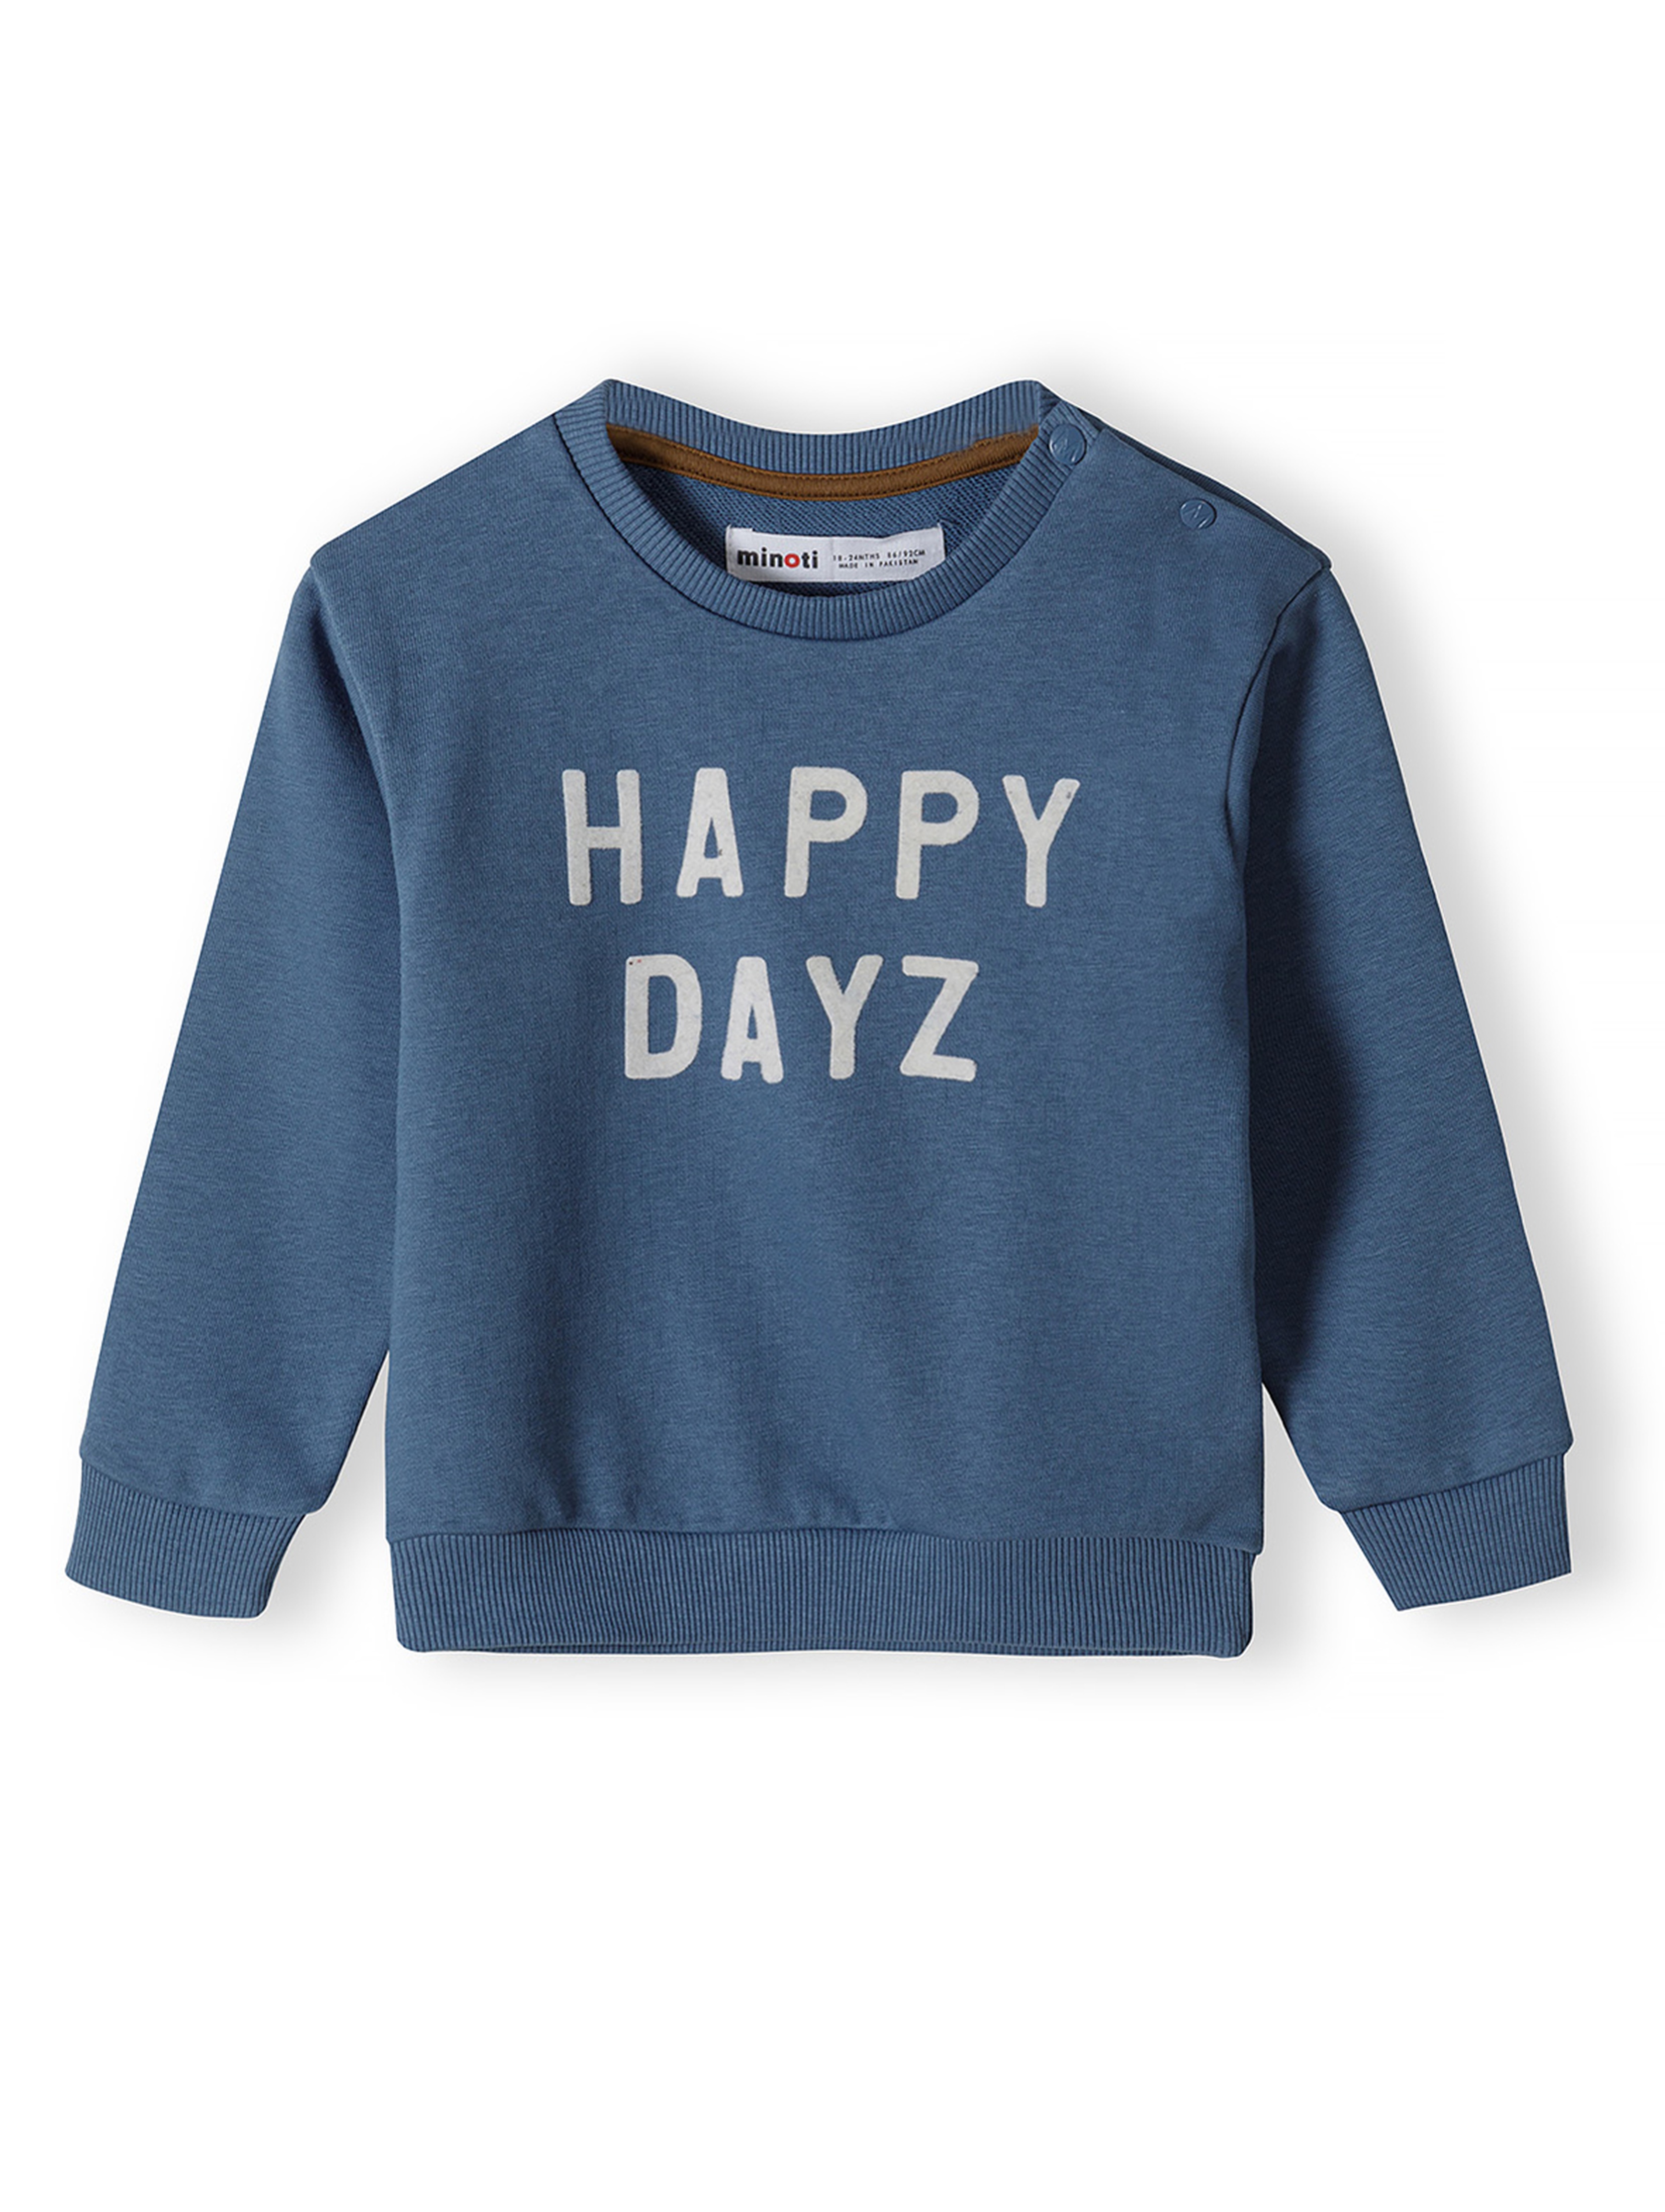 Komplet dresowy niemowlęcy Happy dayz- bluza i spodnie dresowe